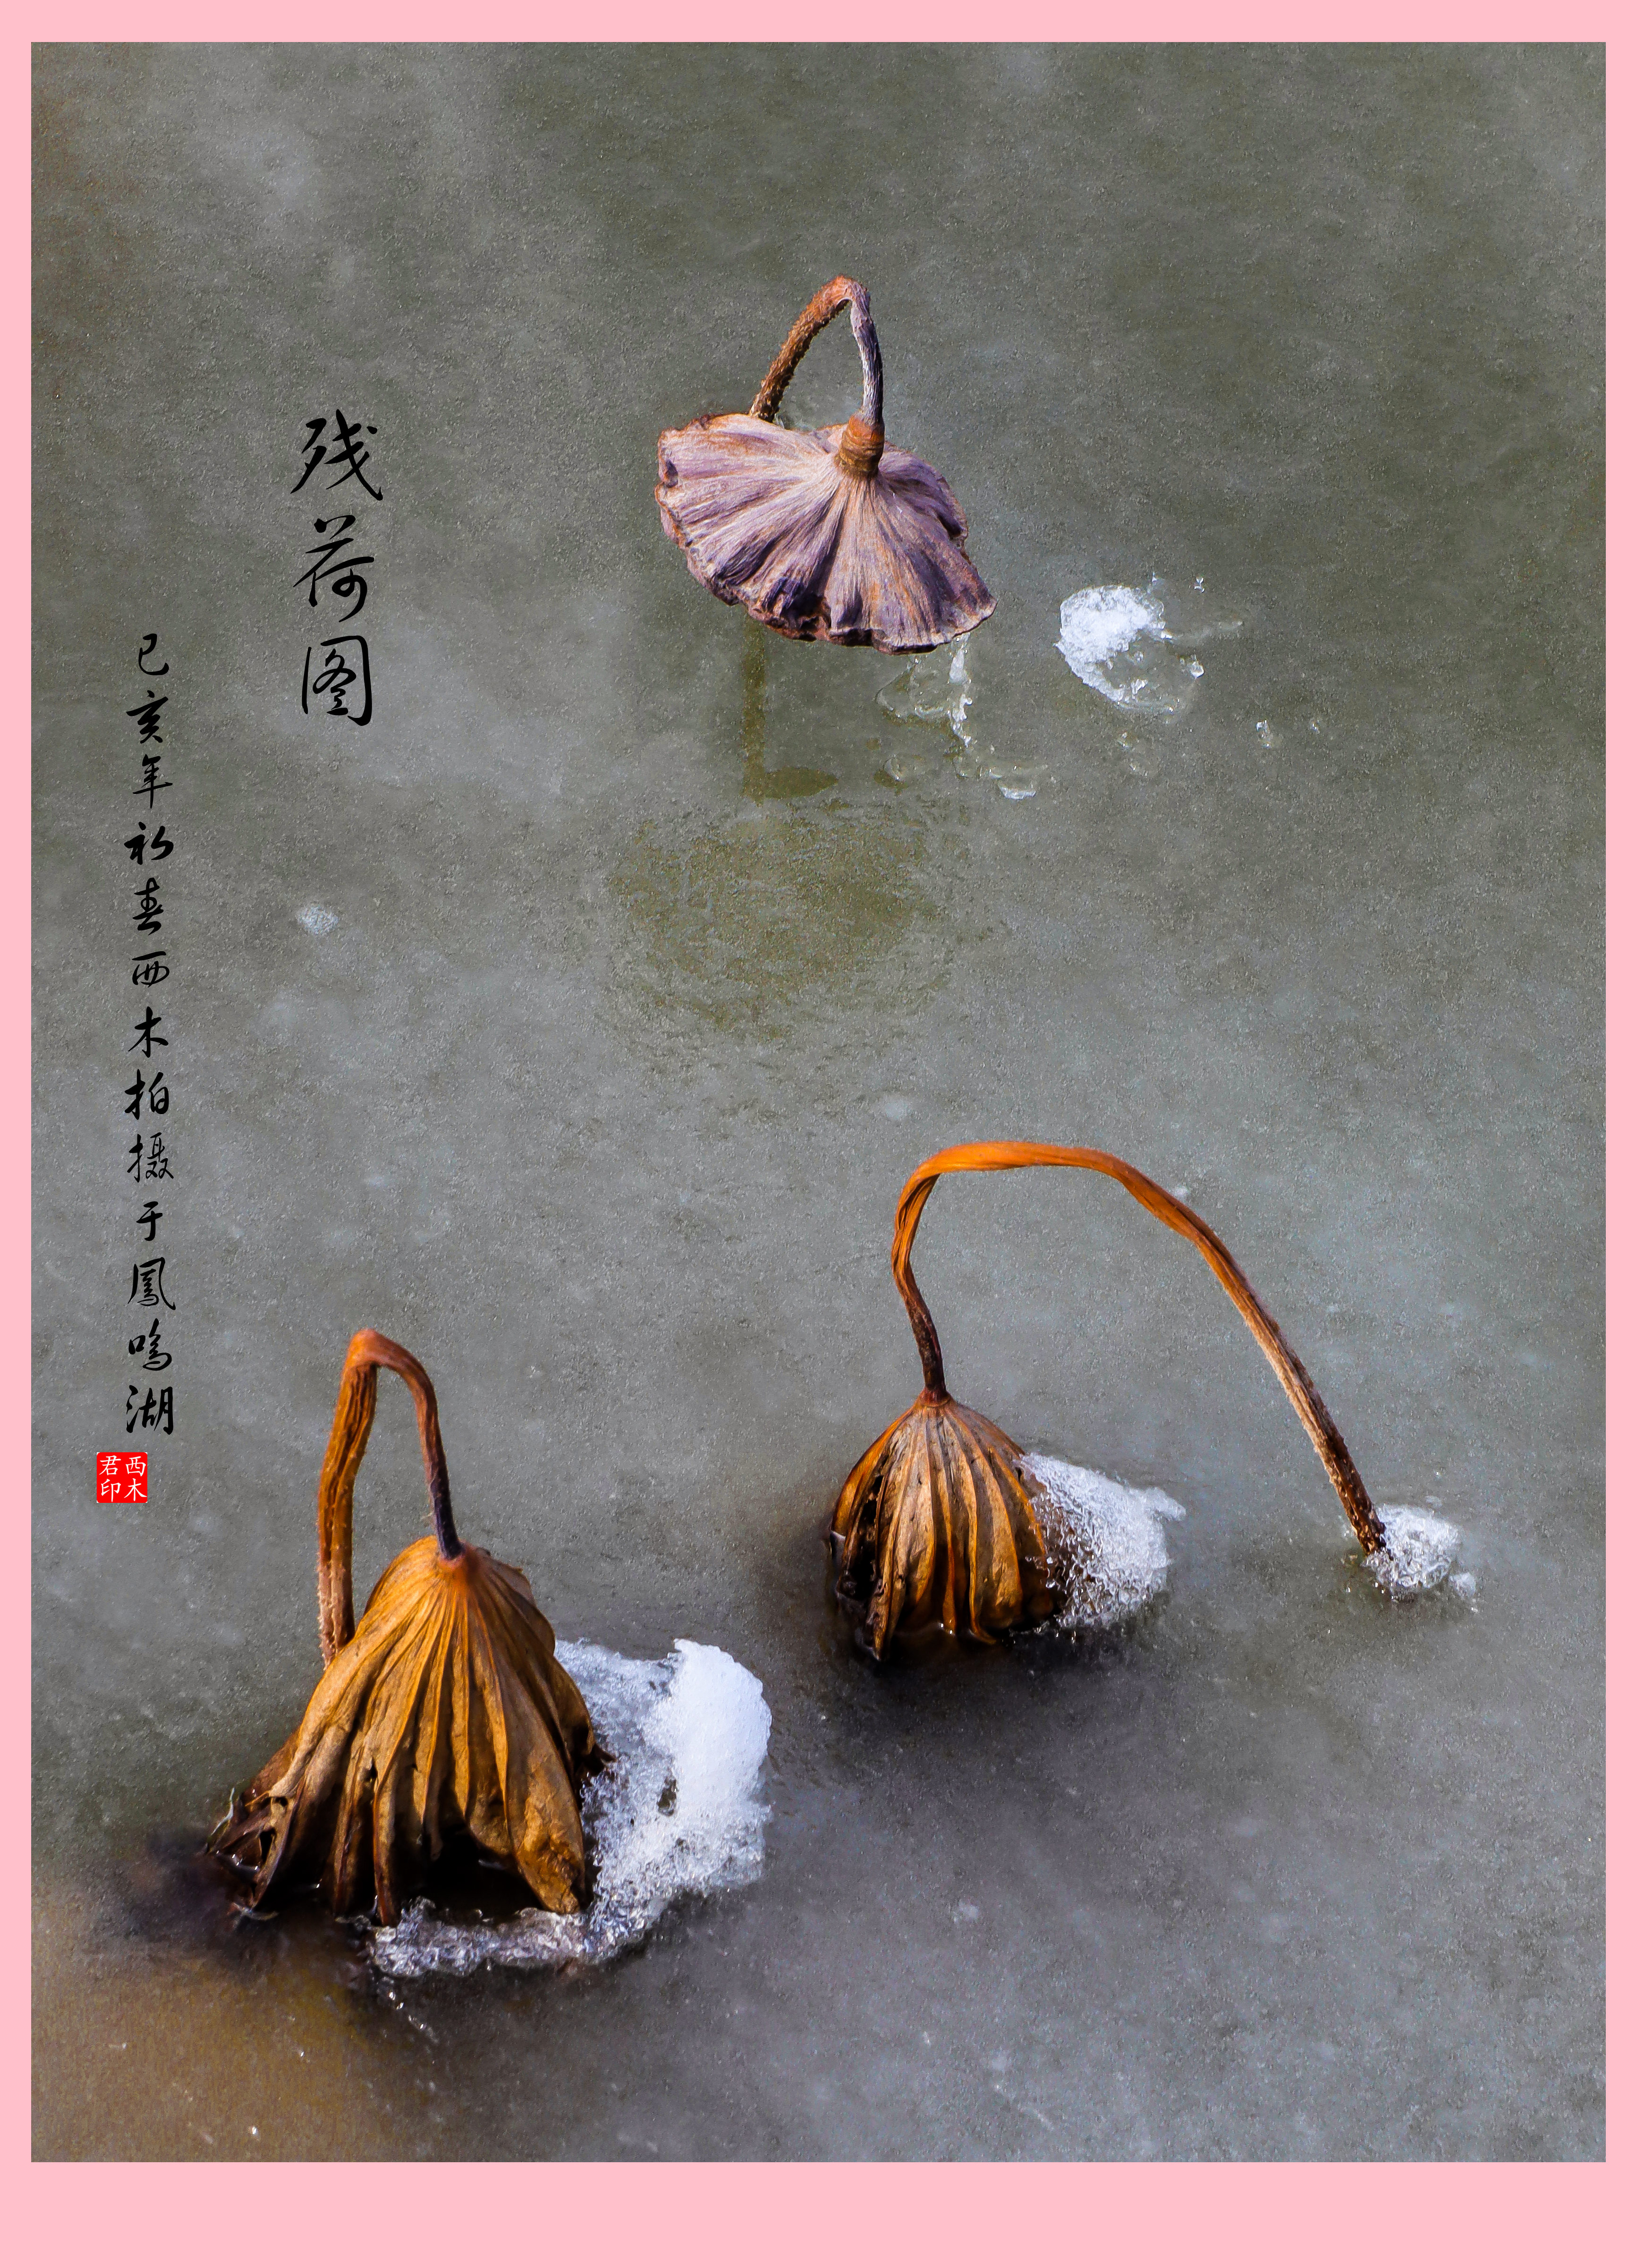 【冰封残荷摄影图片】新疆石河子北湖荷花池生态摄影_剑影秋风